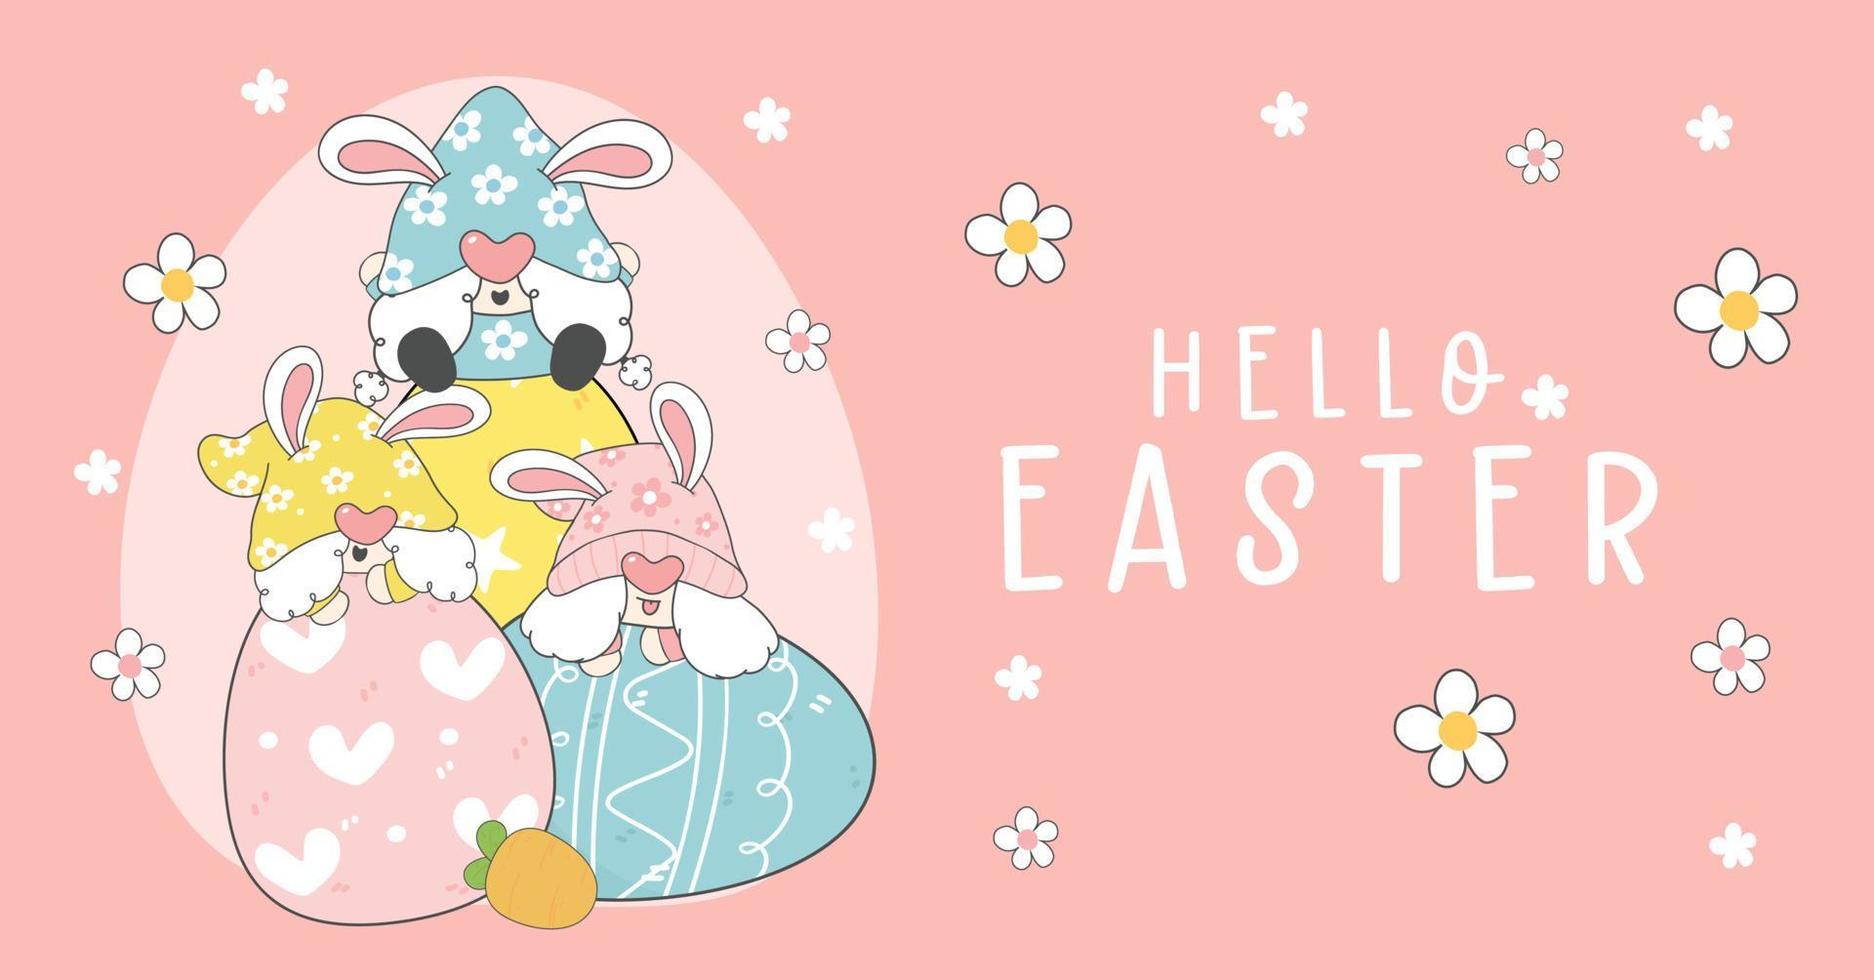 feliz saludo de Pascua, grupo de tres lindas y divertidas orejas de conejito de gnomo pastel en huevos más fáciles, vector de contorno de dibujo de dibujos animados de elfo, banner de felices fiestas